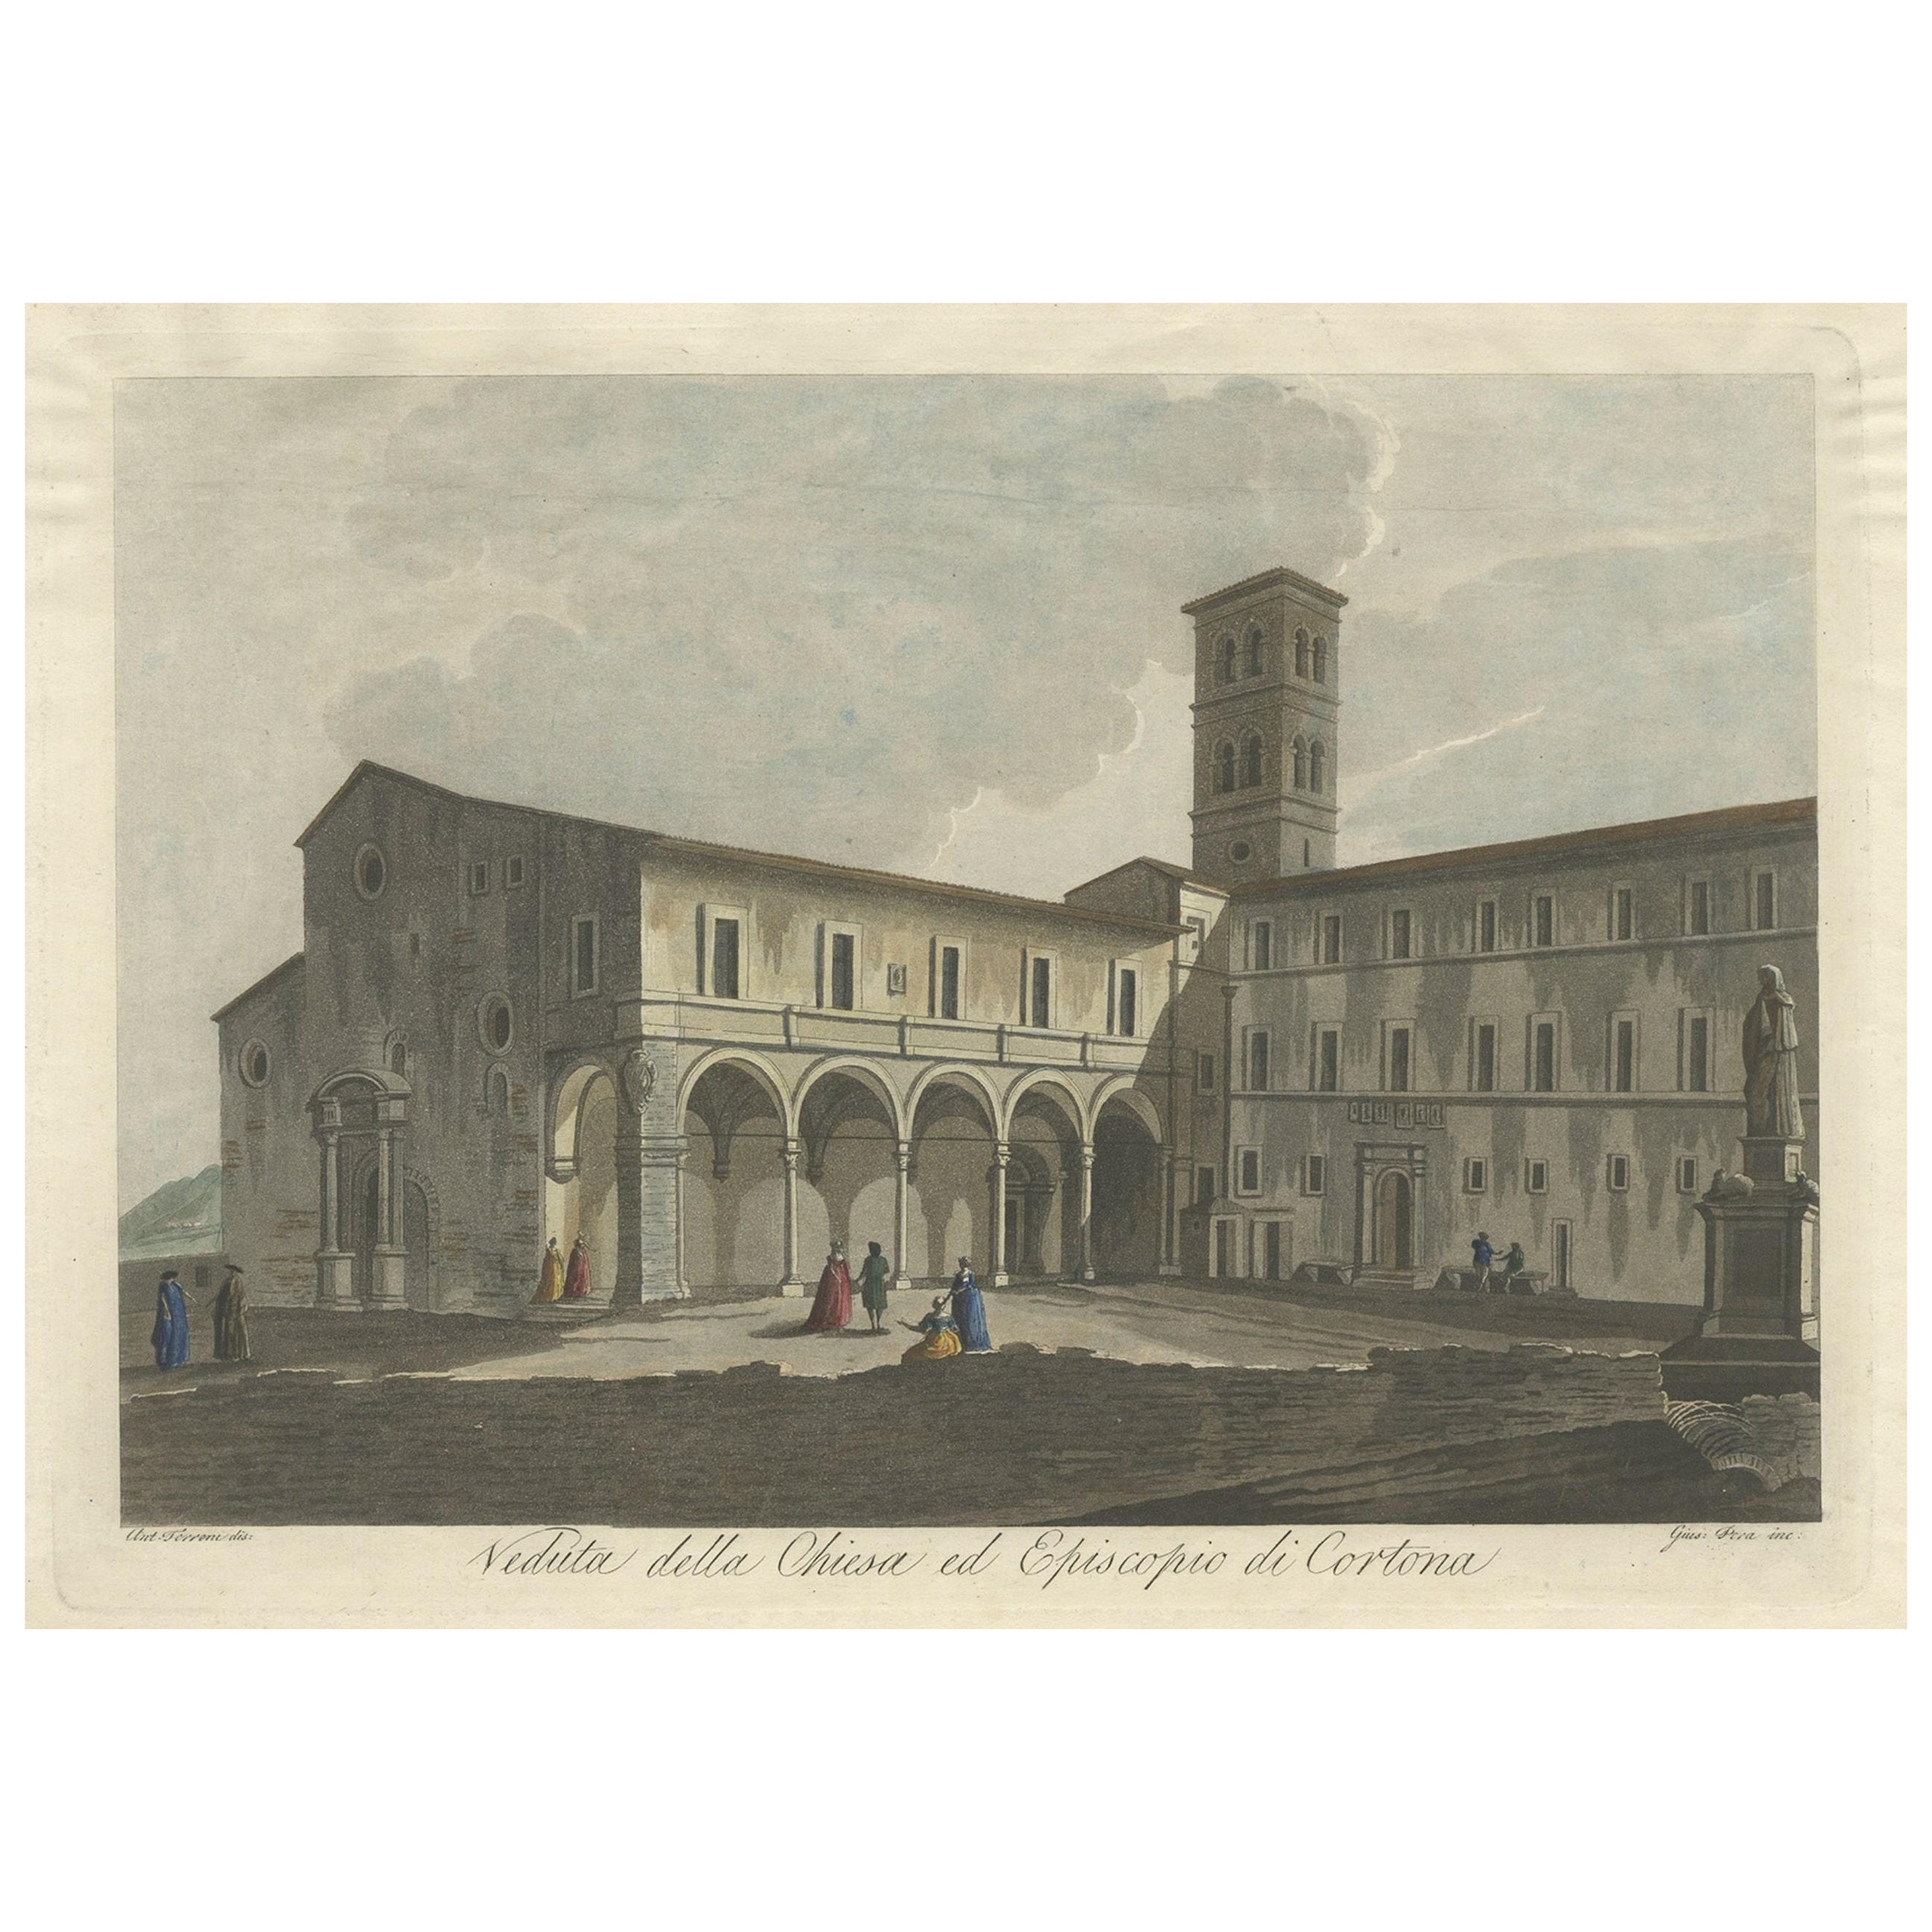 View of the Church of Cortona, einer Stadt und des Comune Arezzo, in der Toskana, Italien, 1800